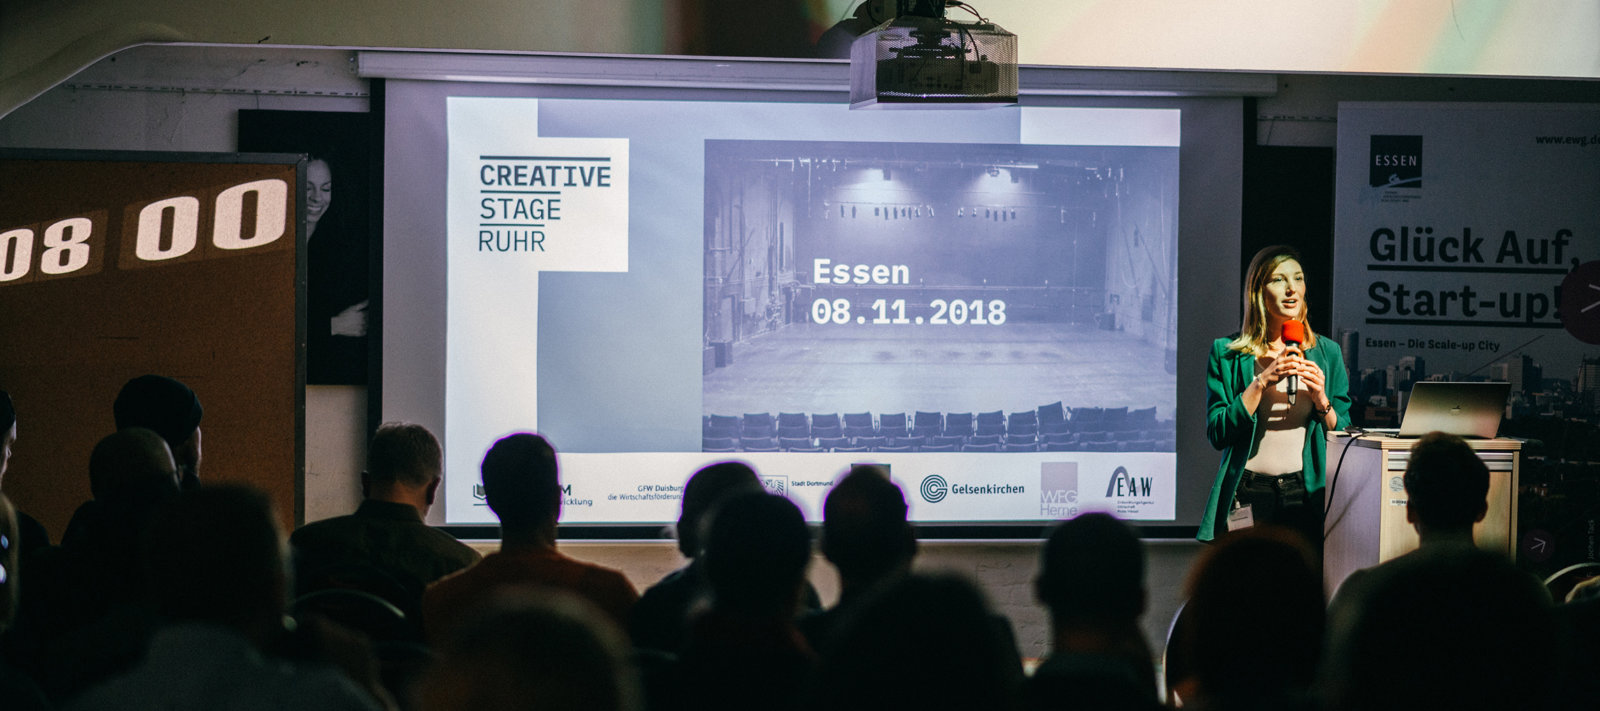 Startup-Essen – Creative Stage Ruhr Essen